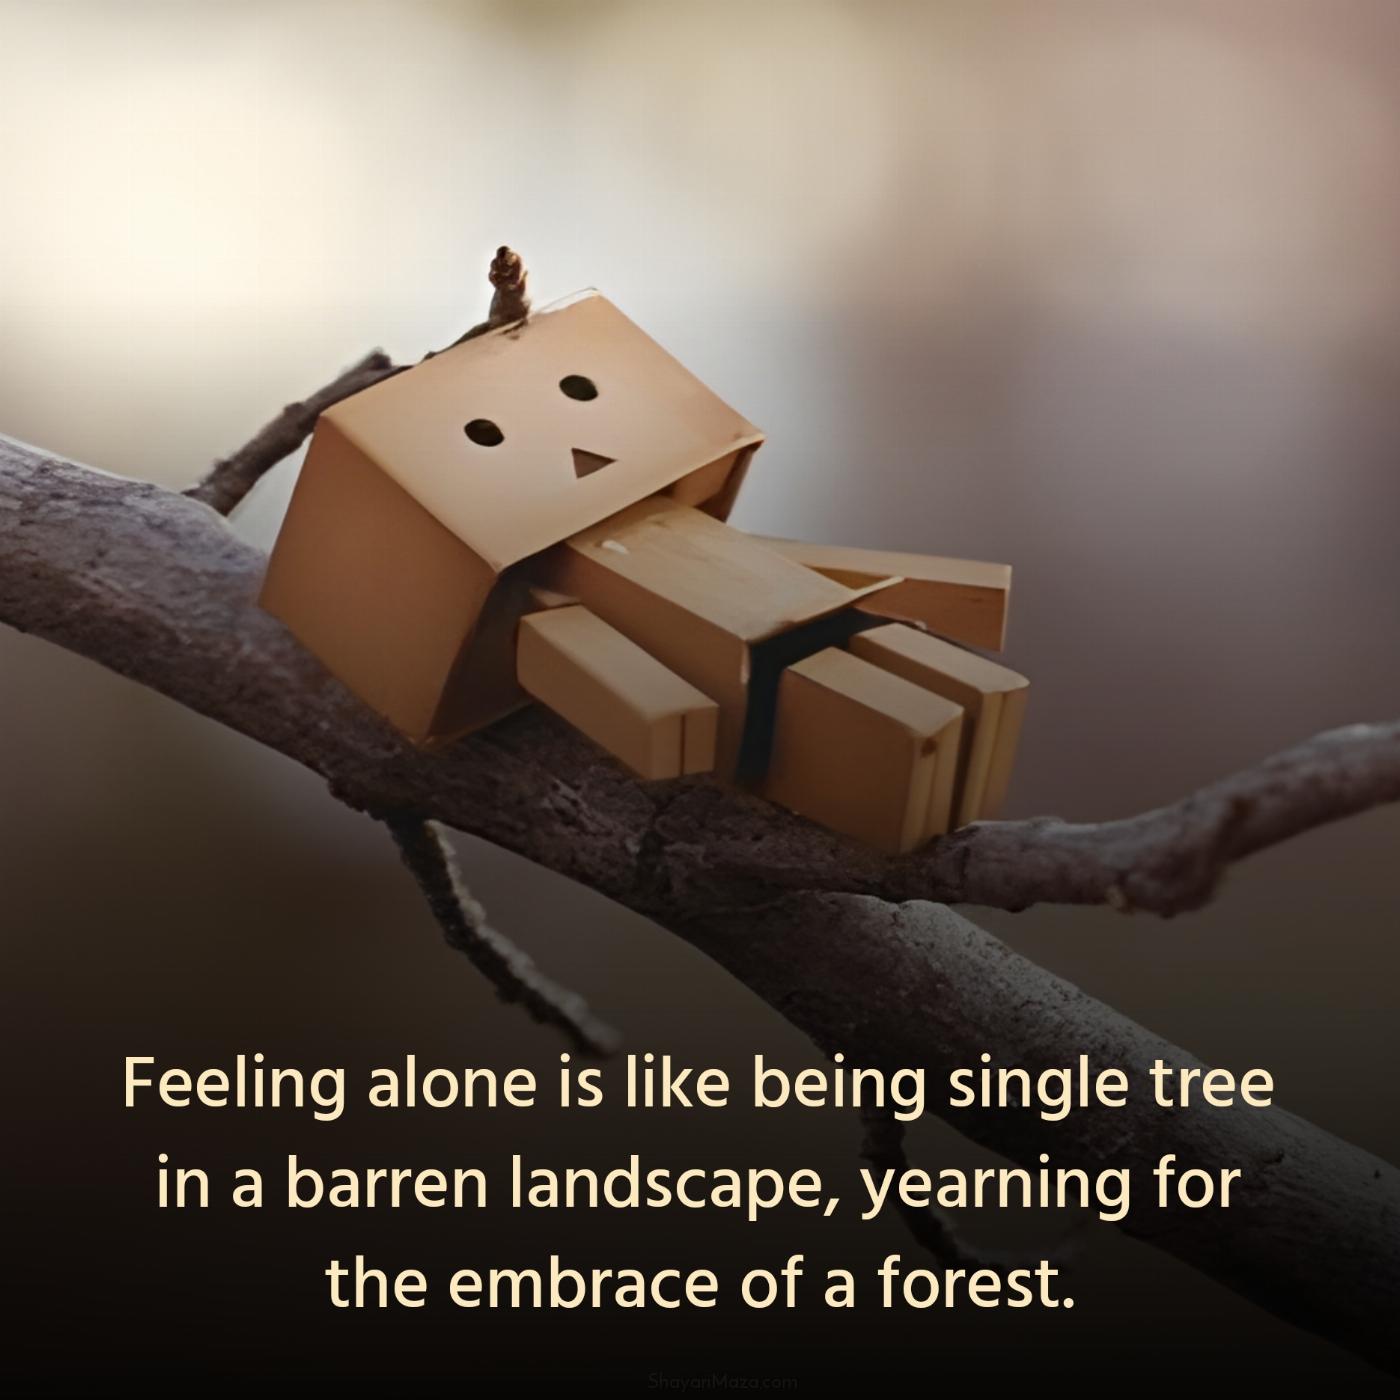 Feeling alone is like being single tree in a barren landscape